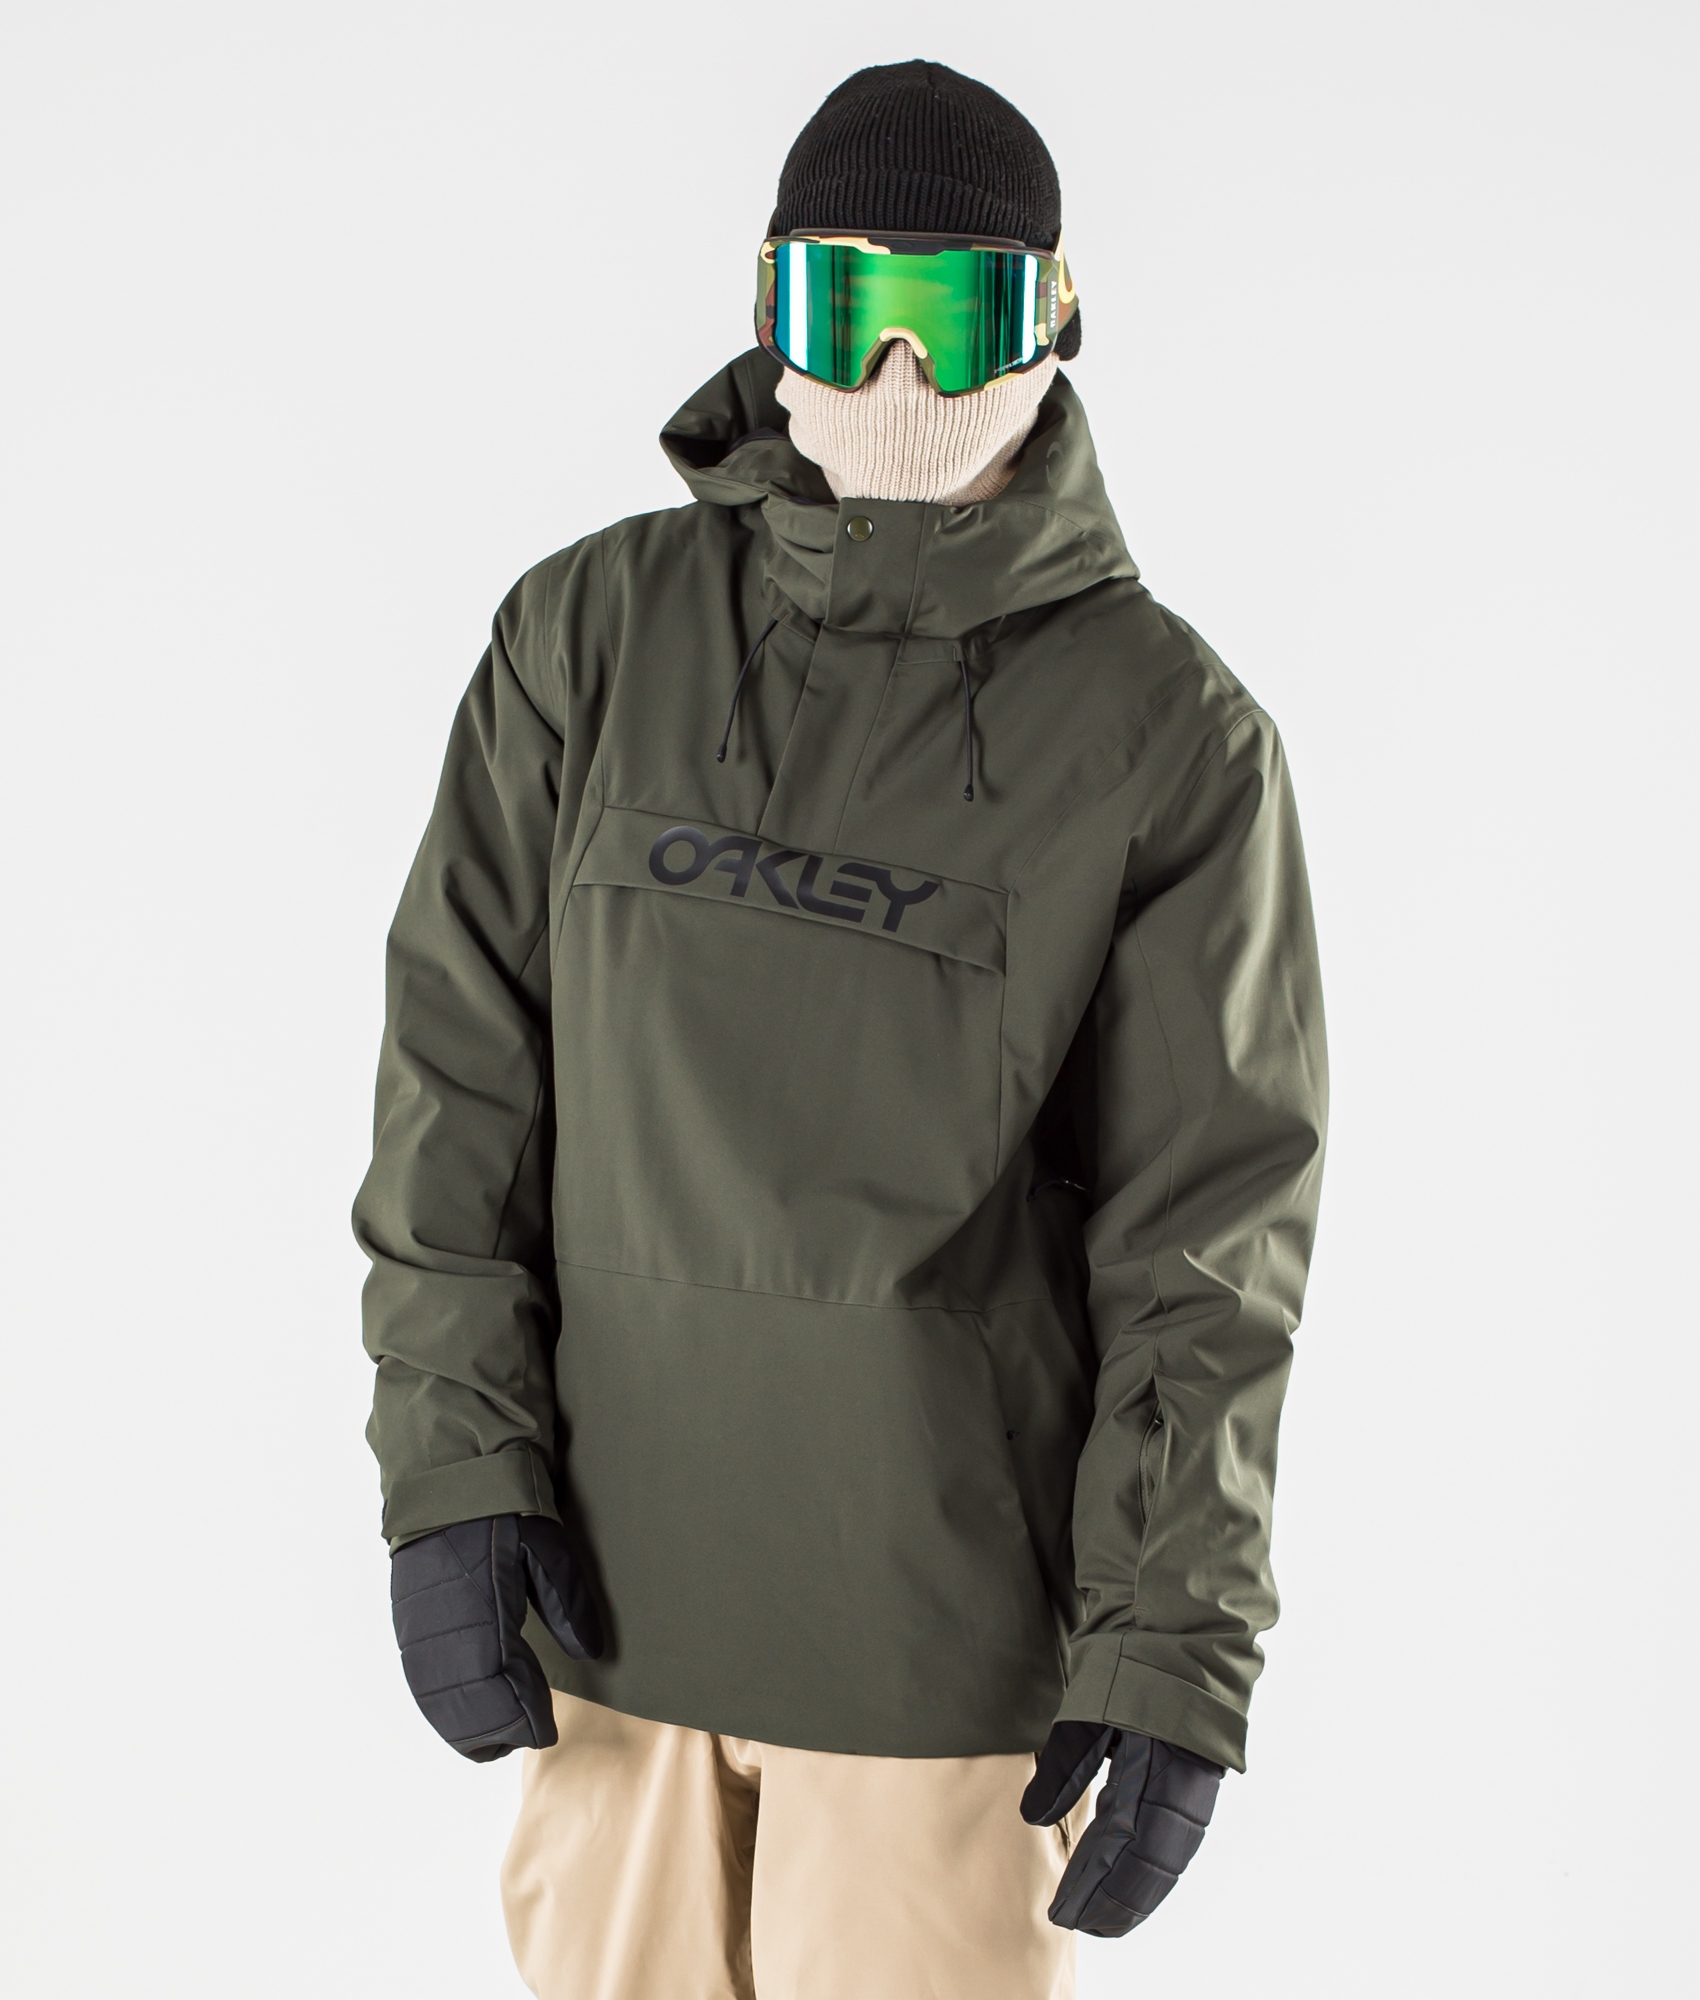 oakley snowboard jacket